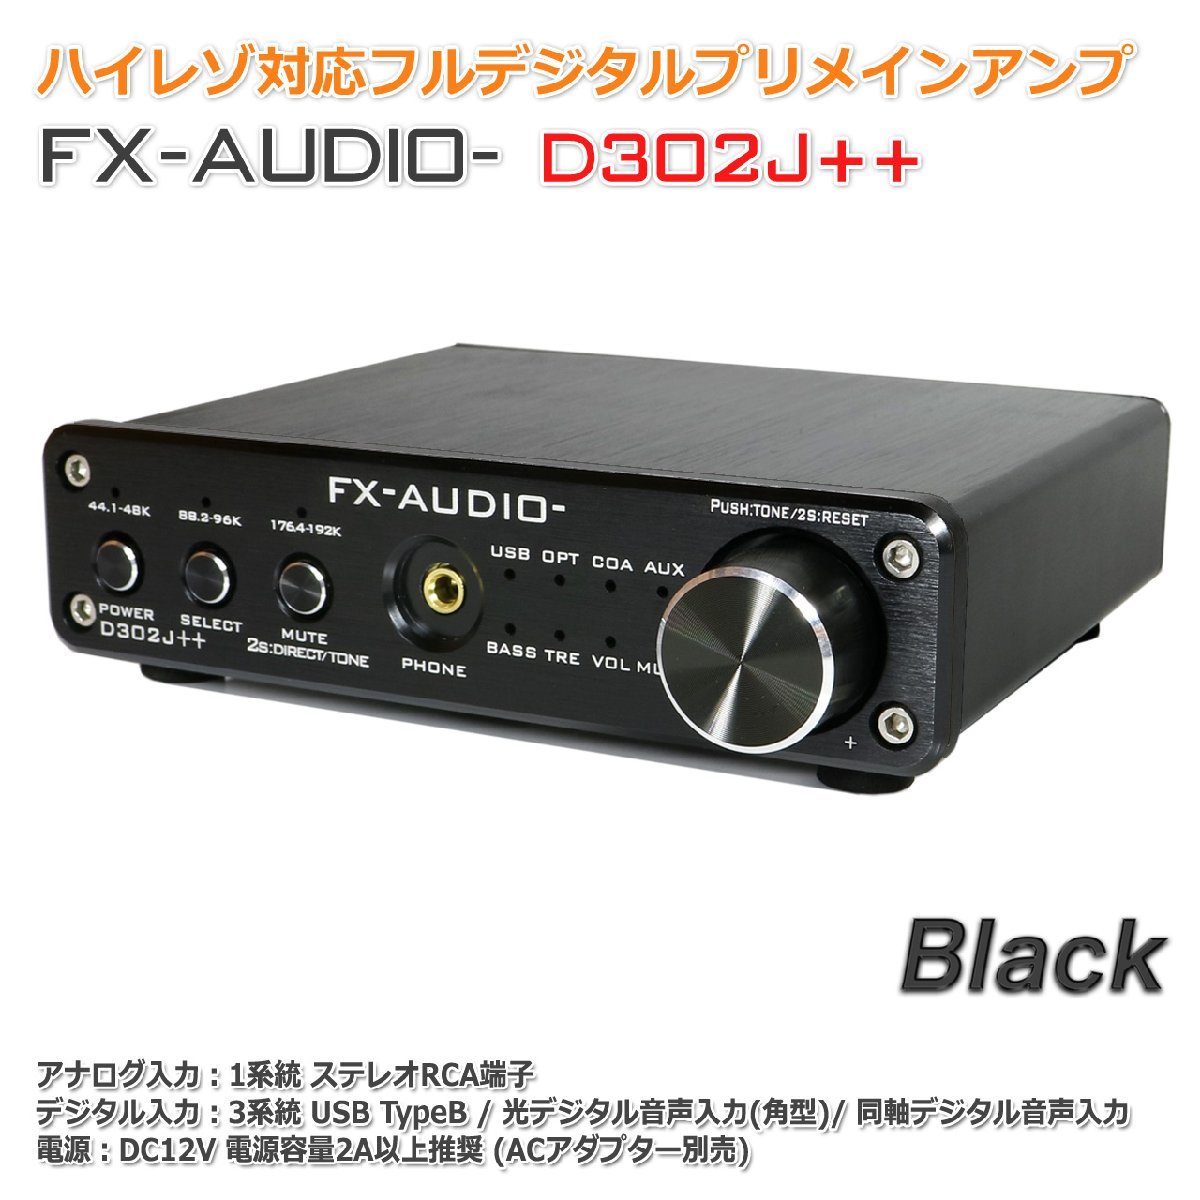 FX-AUDIO- D302J++[ブラック] ハイレゾ対応デジタルアナログ4系統入力